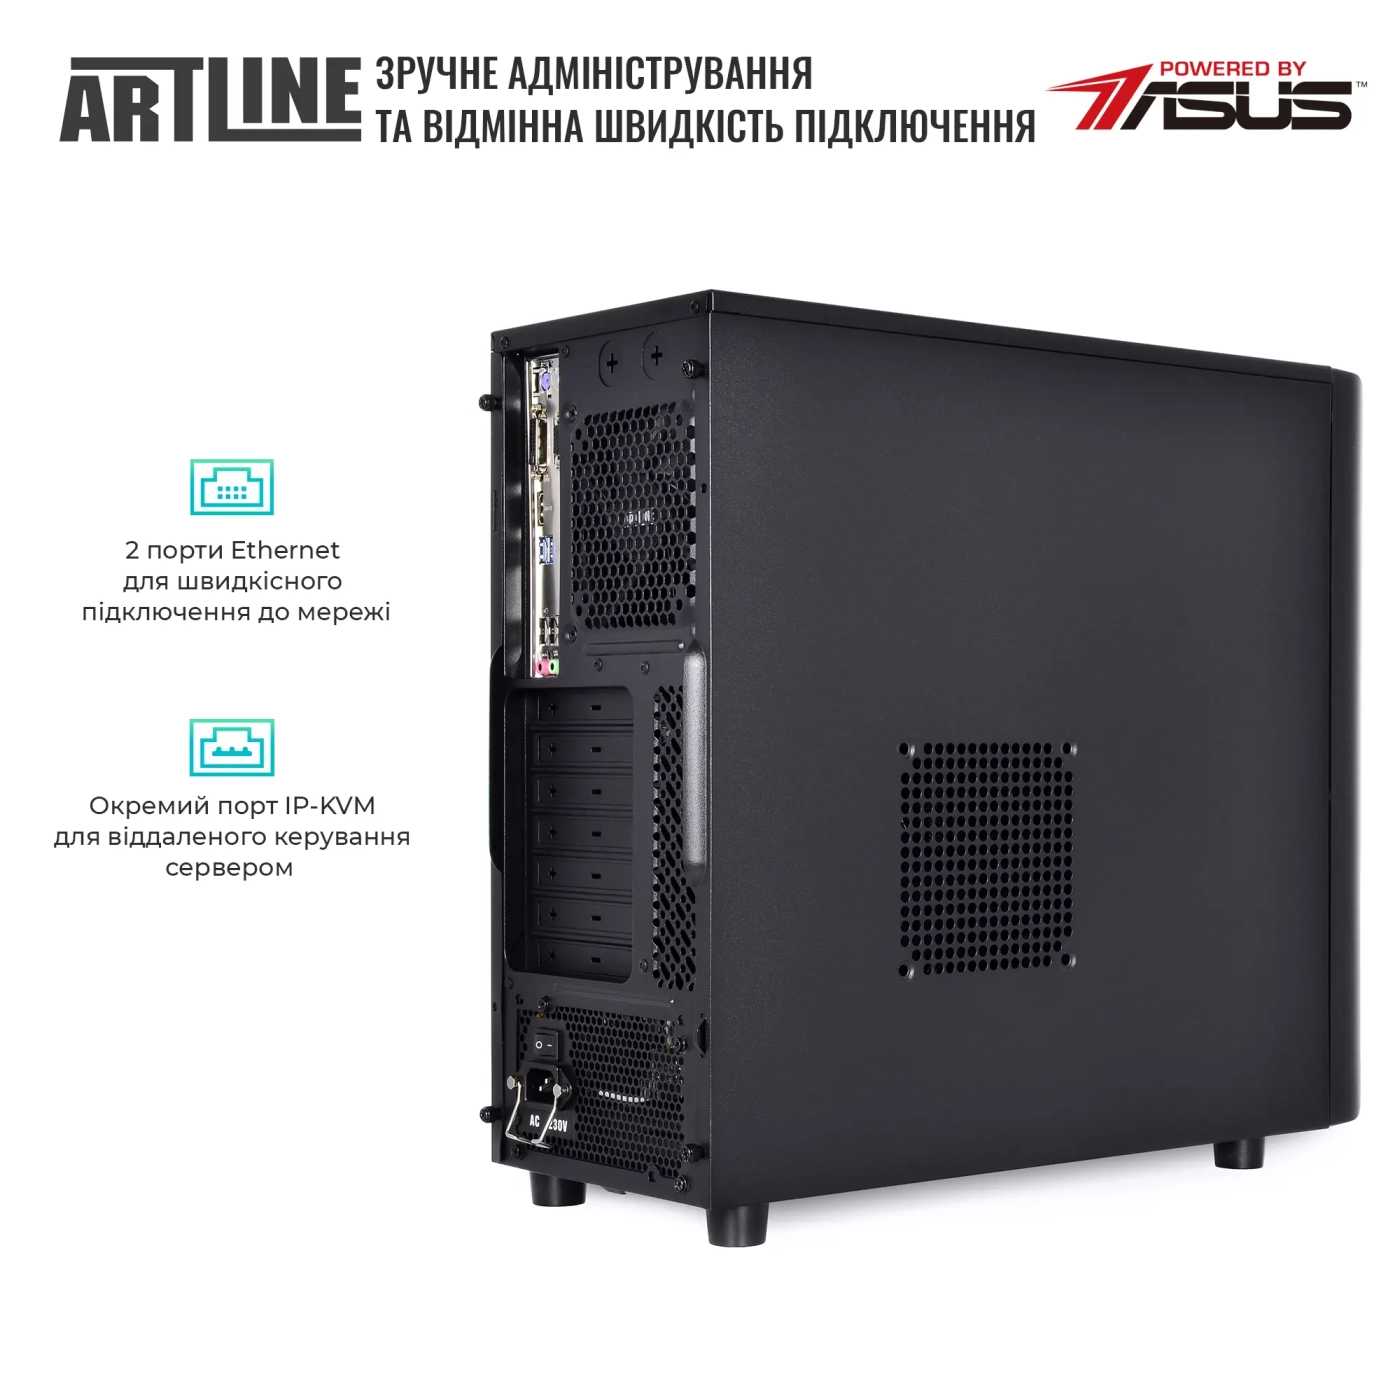 Купить Сервер ARTLINE Business T37v16 - фото 5